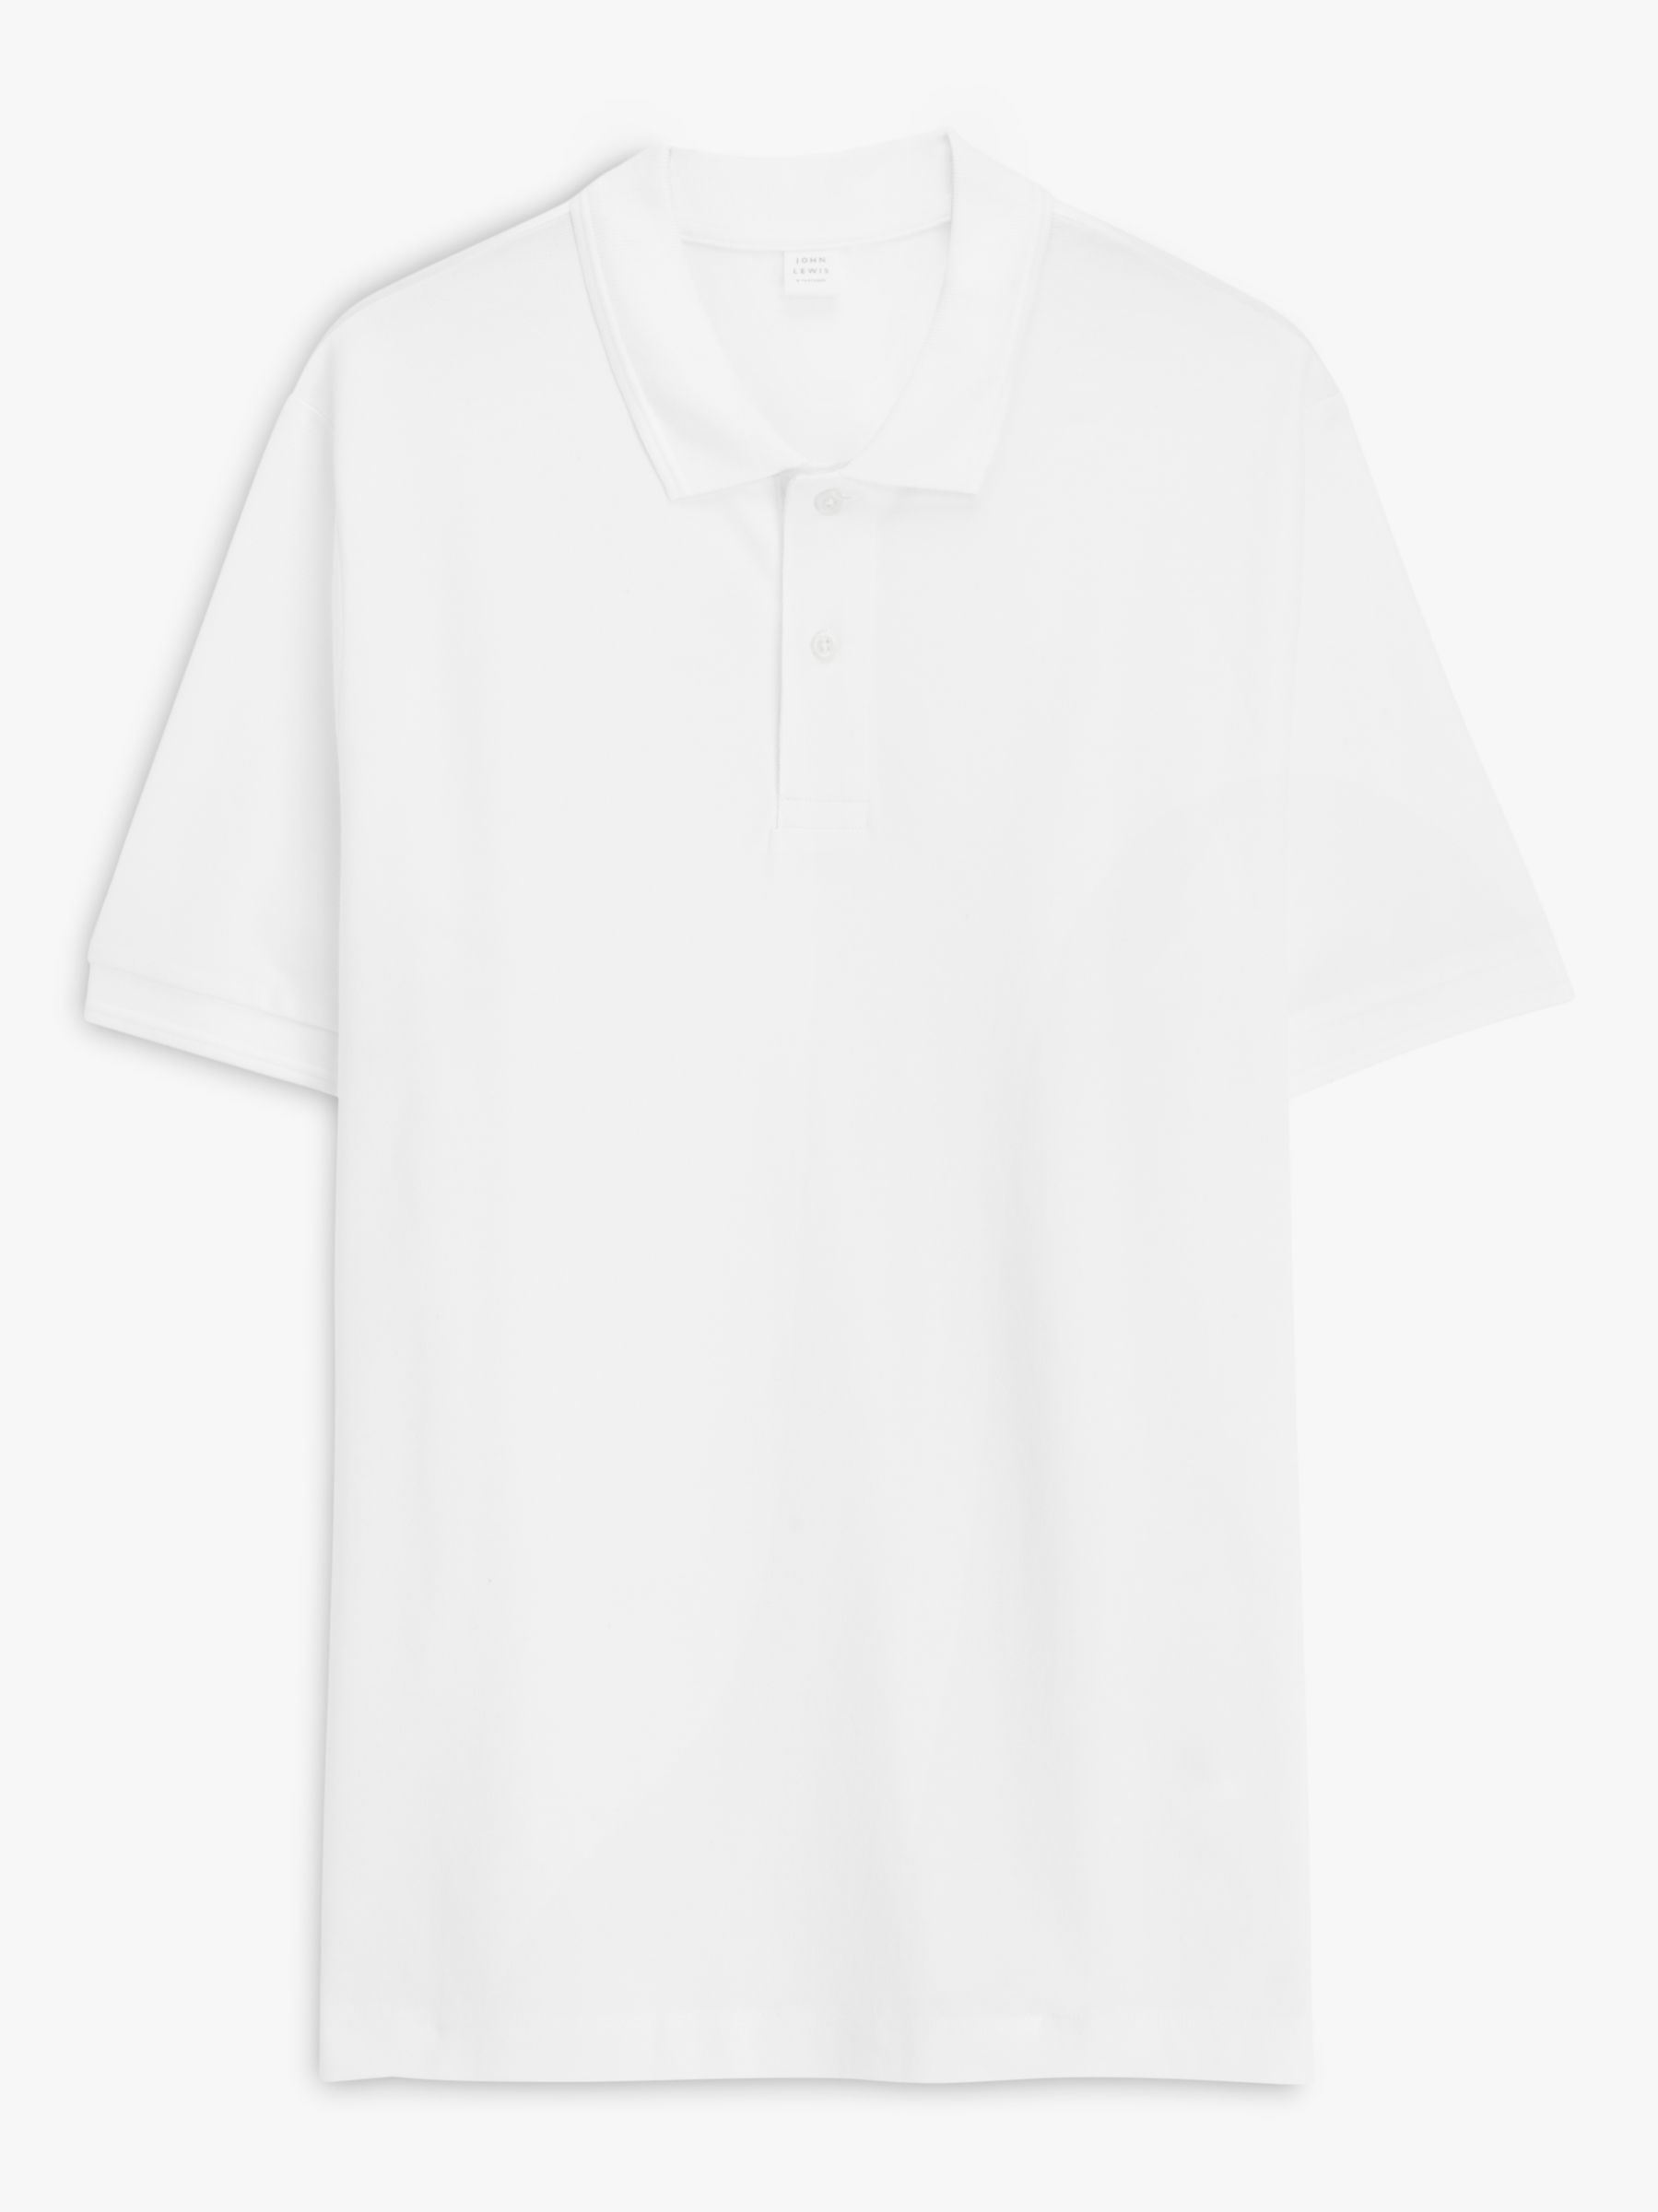 John Lewis Supima Cotton Jersey Polo Shirt, White, S